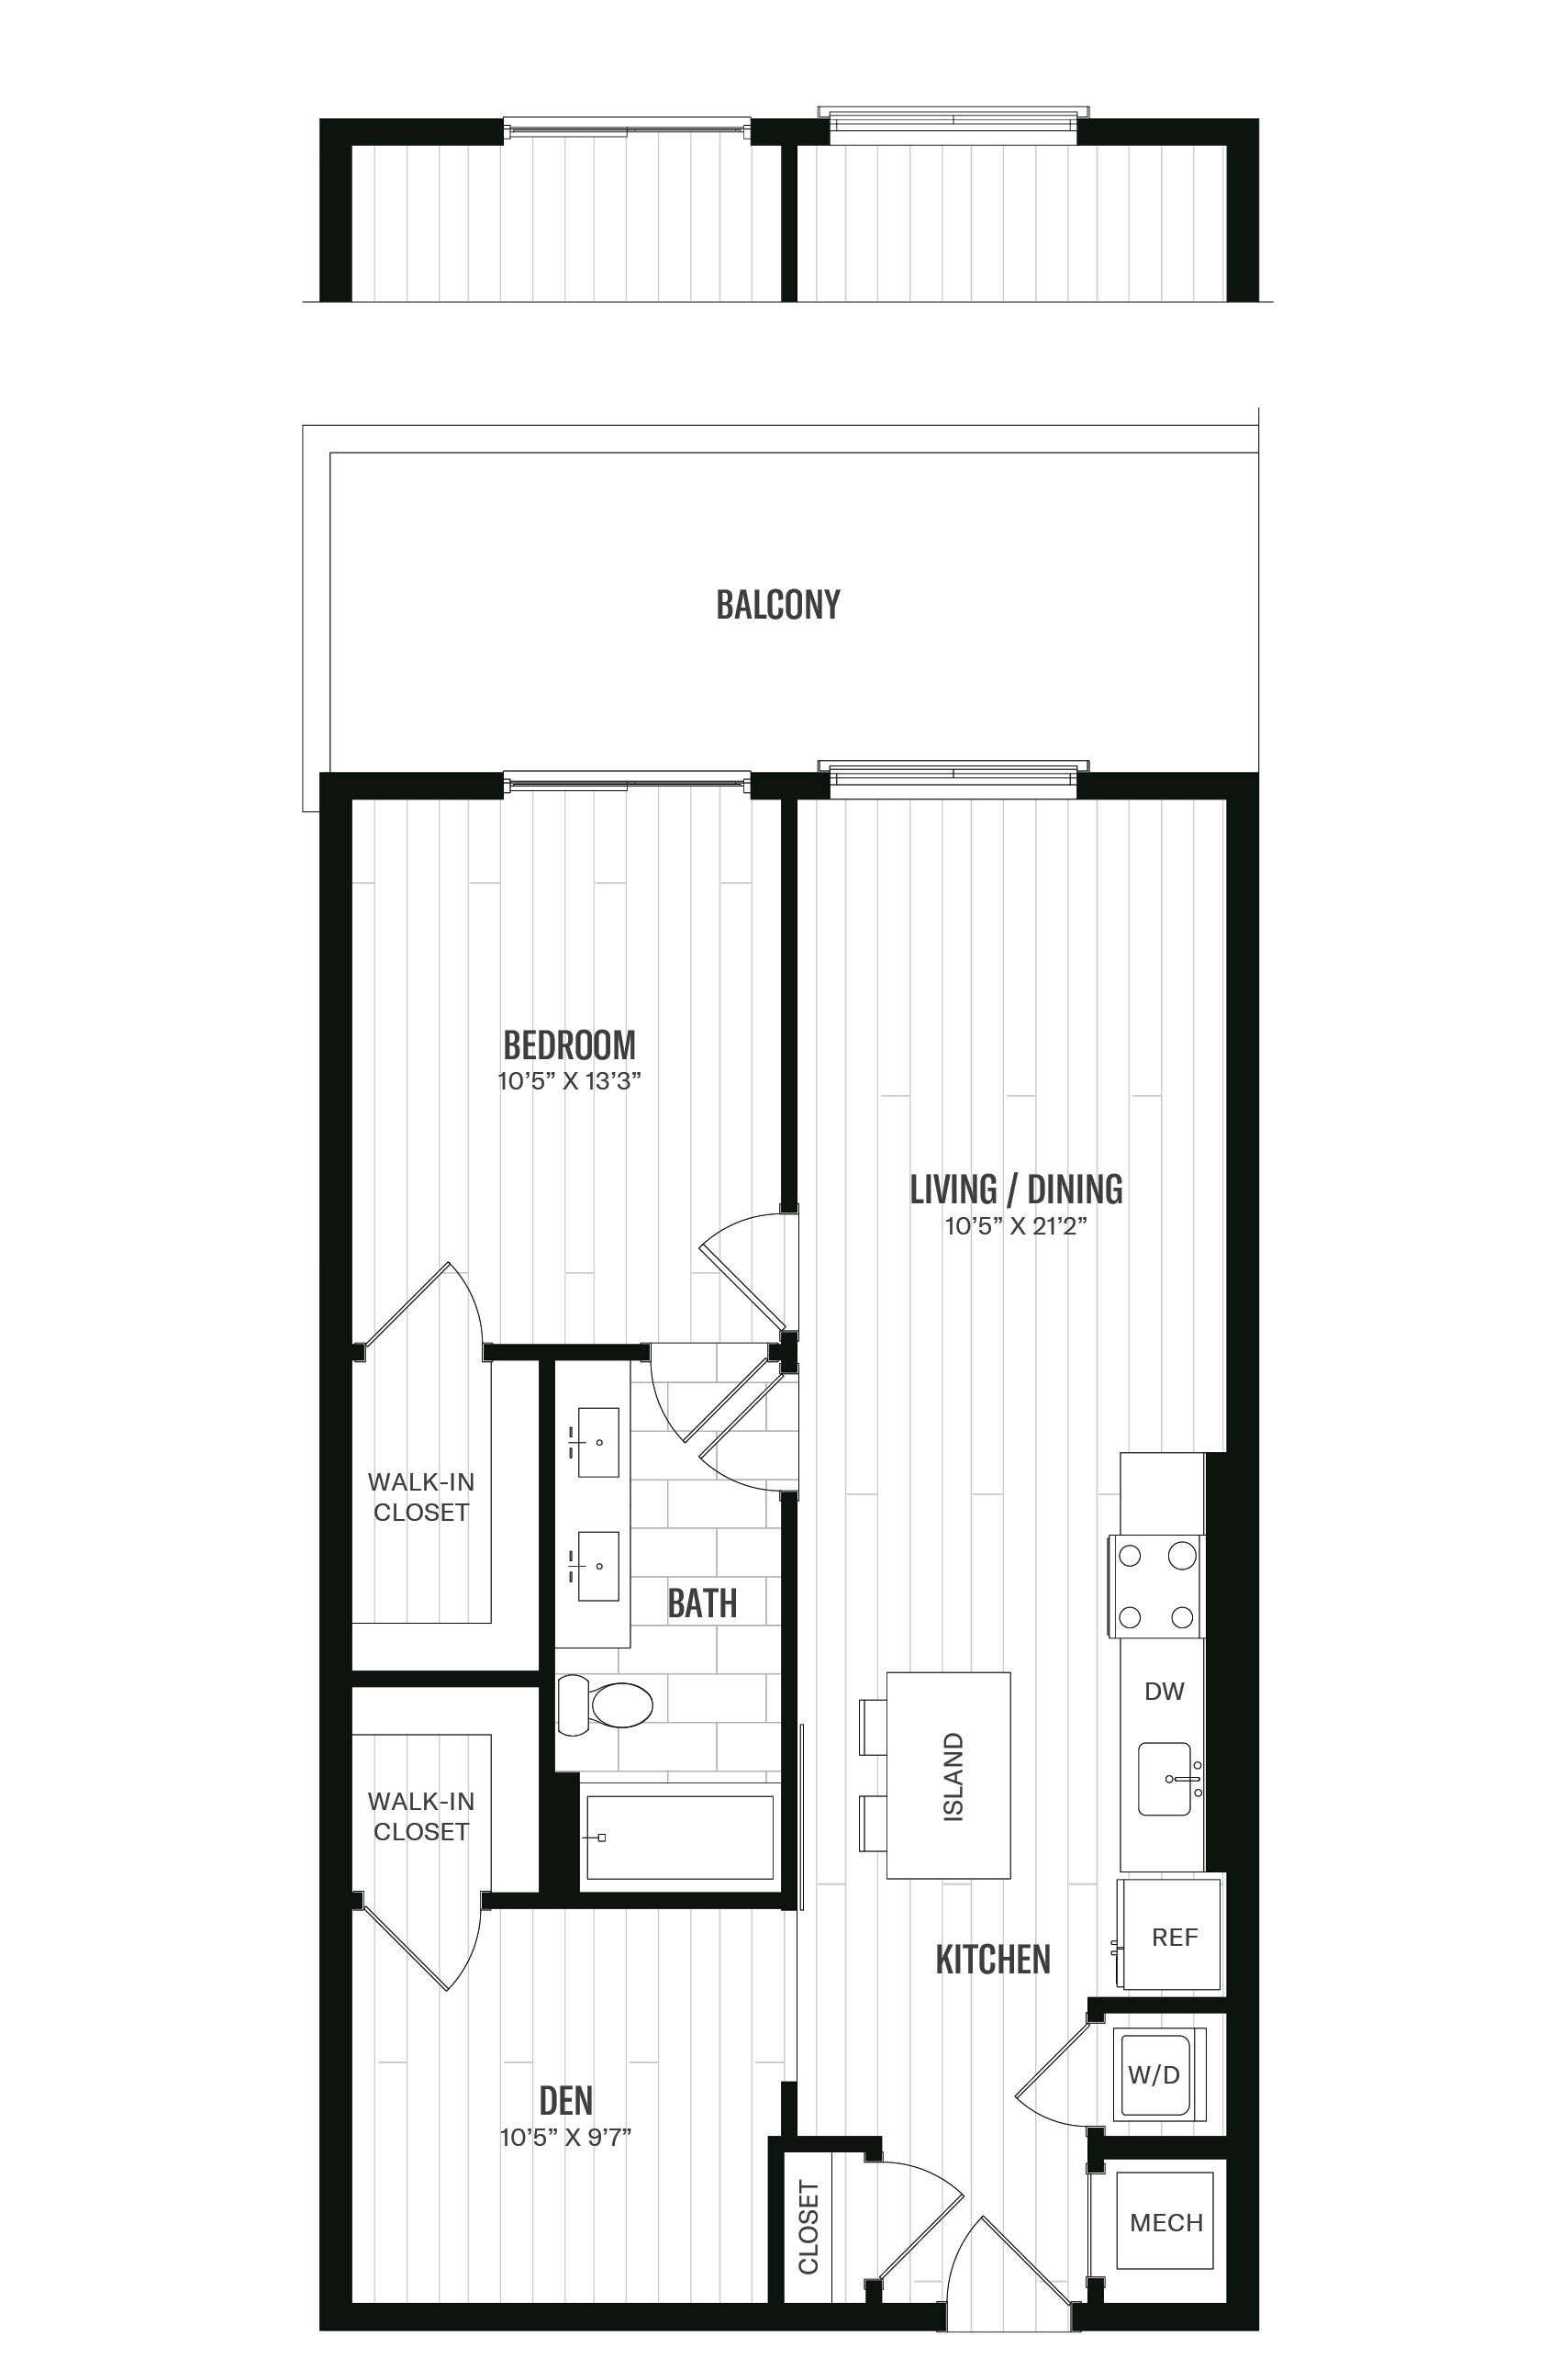 Floorplan image of unit 530